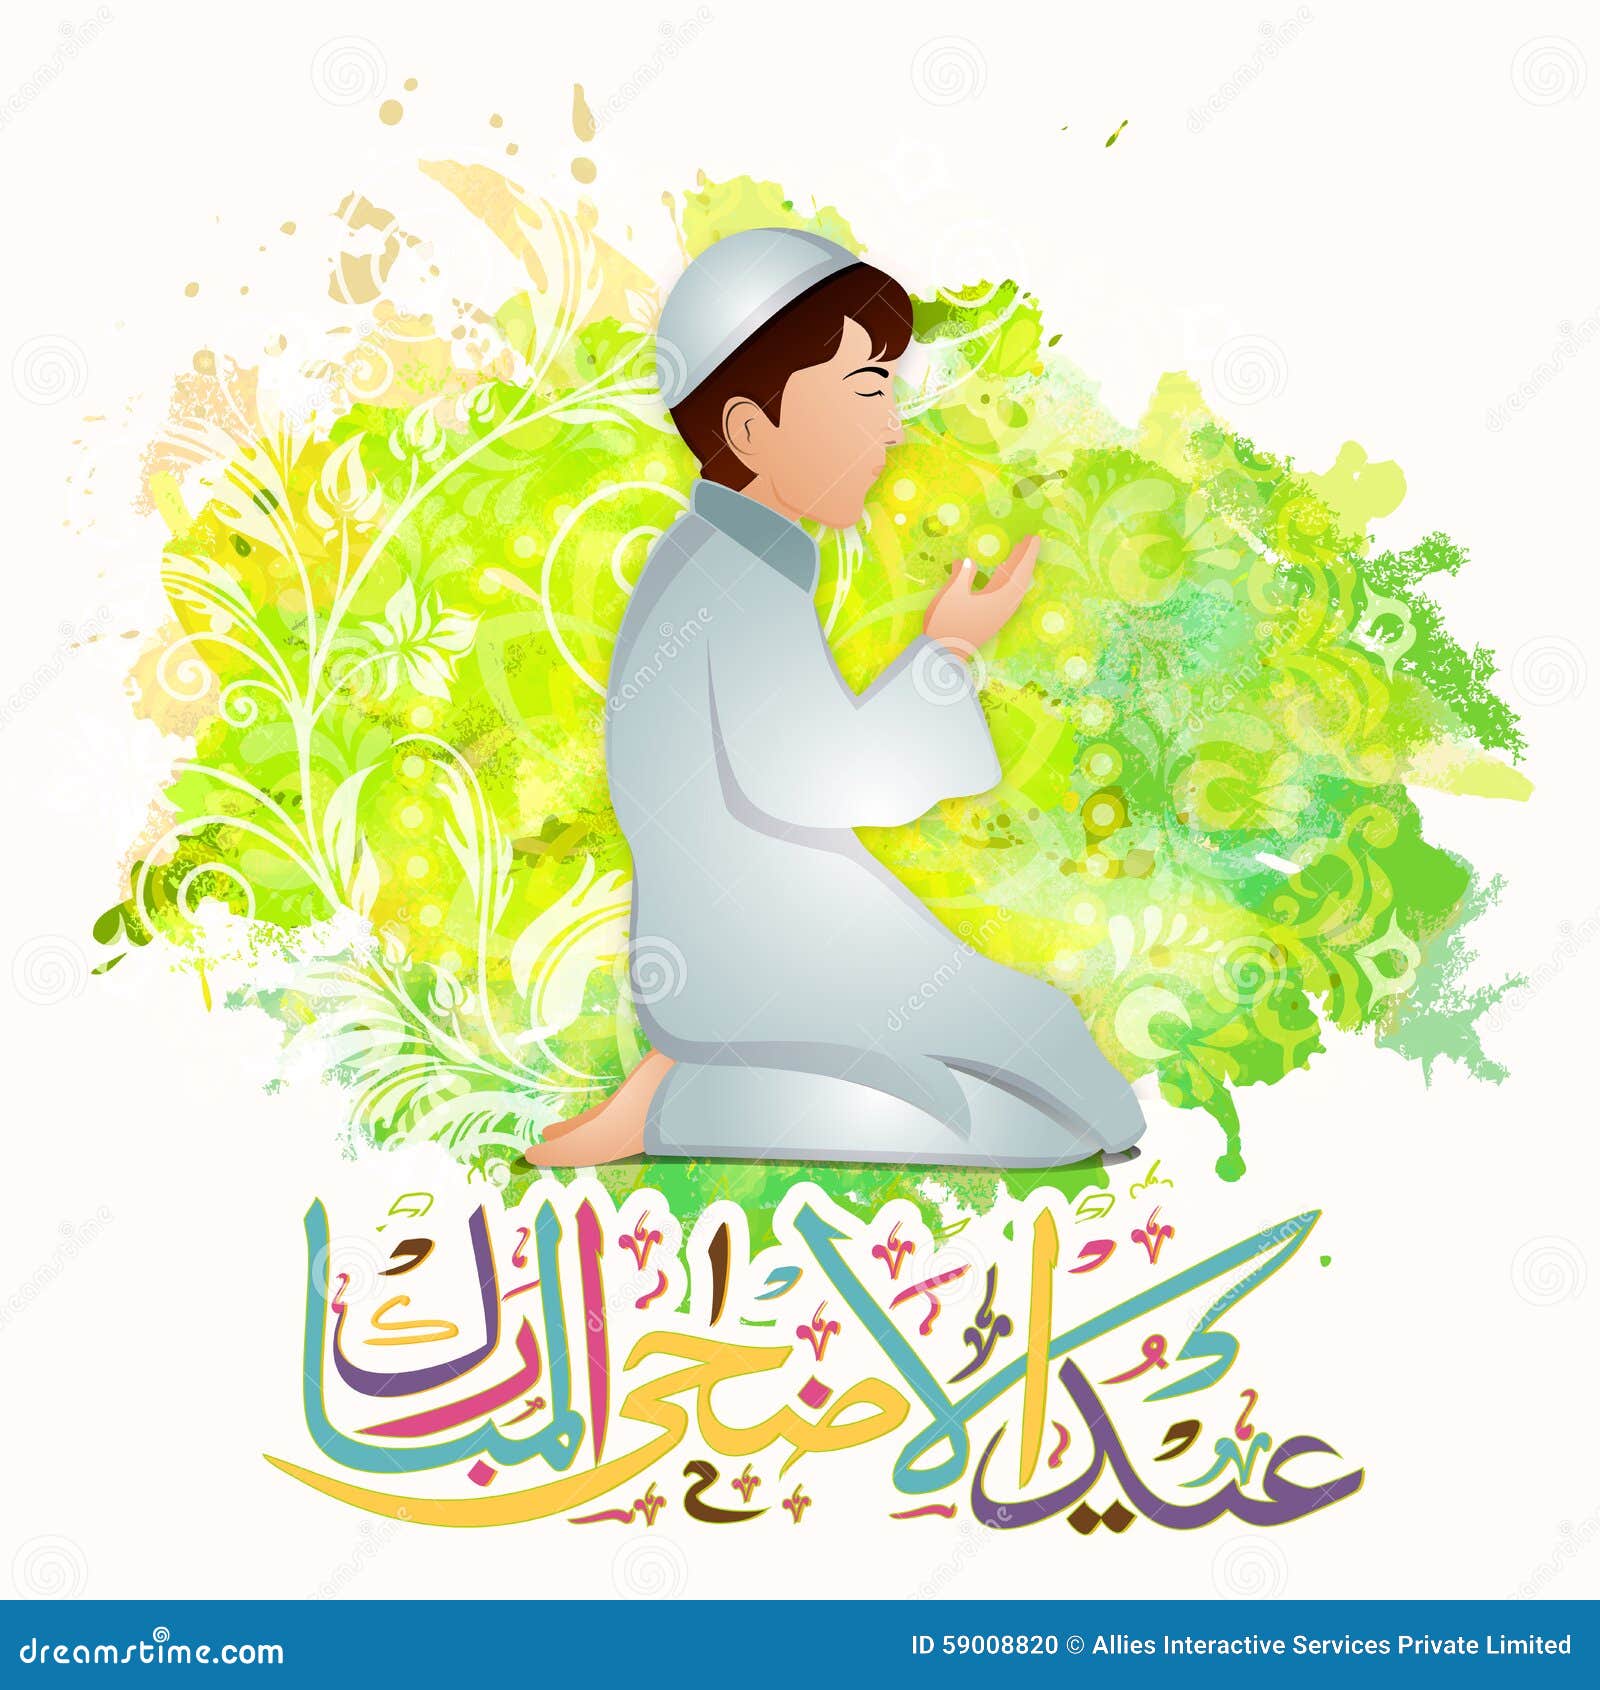 Muslim Boy With Arabic Text For Eid-Al-Adha. Stock 